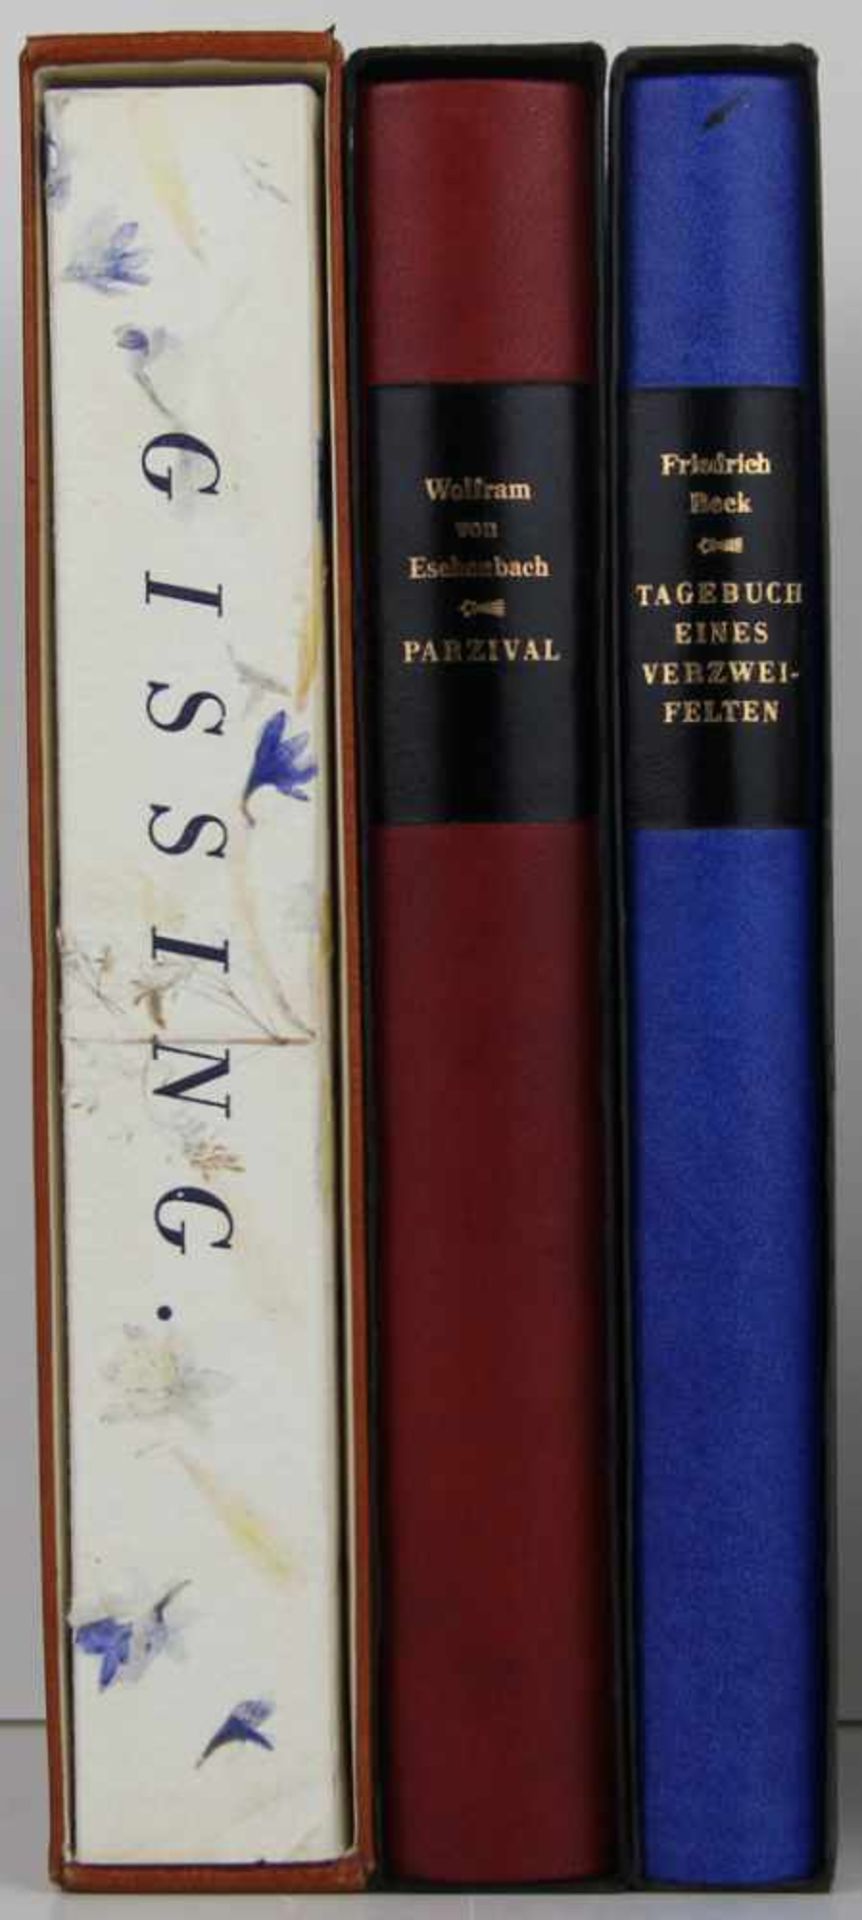 Die Andere Bibliothek. Herausgegeben von Hans Magnus Enzensberger. 3 Vorzugsausgaben der Reihe.